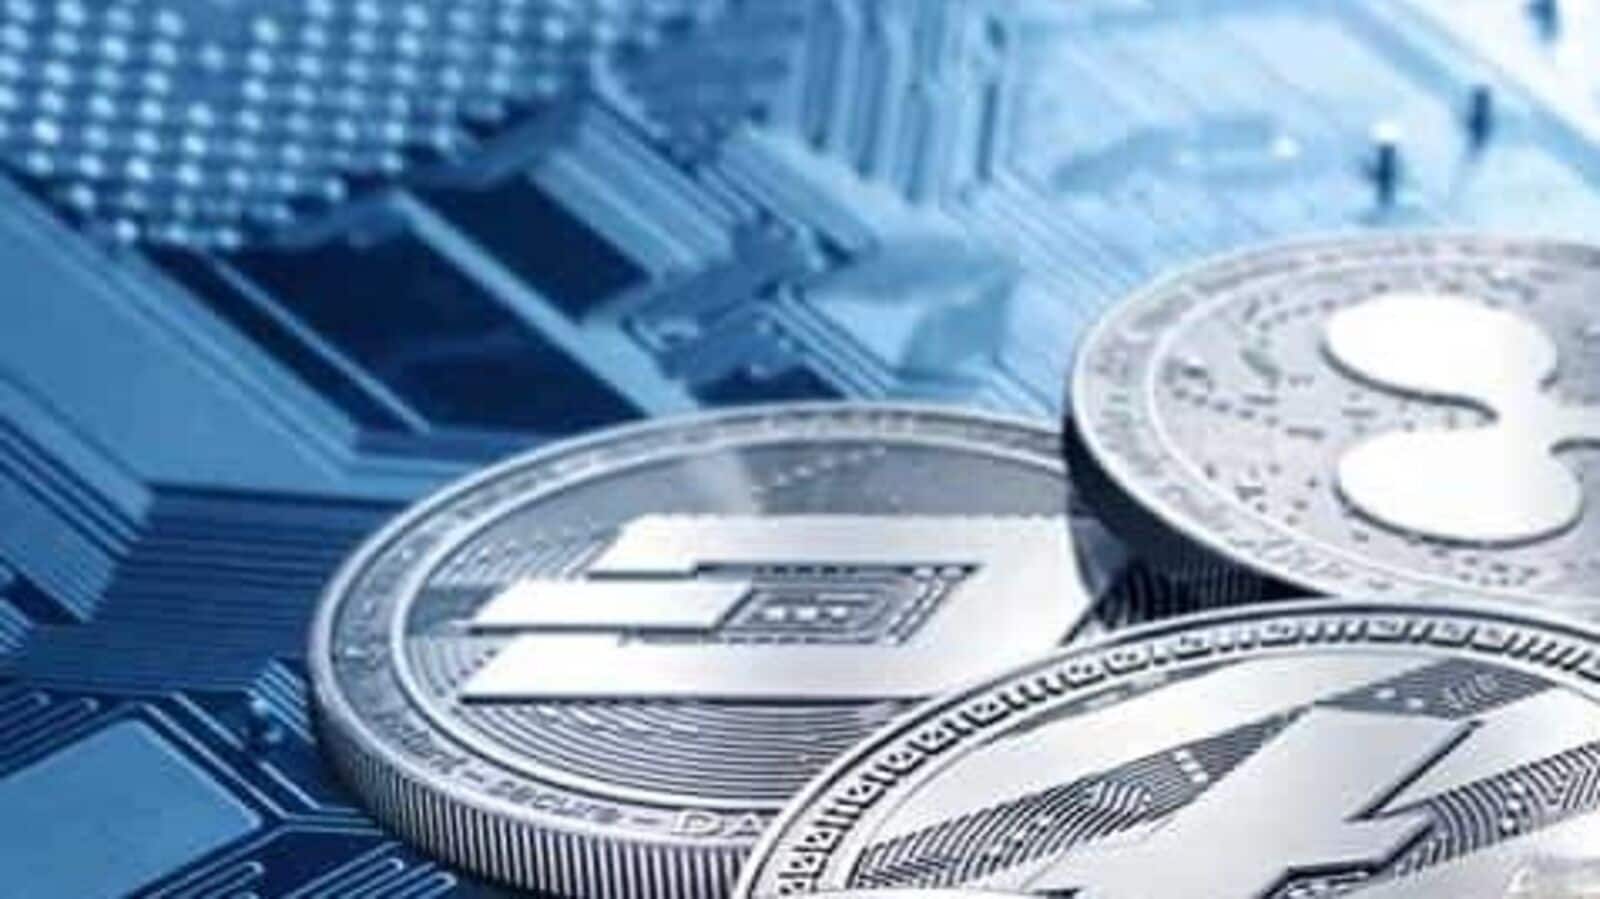 Today's Top Crypto Coins Prices And Data | CoinMarketCap